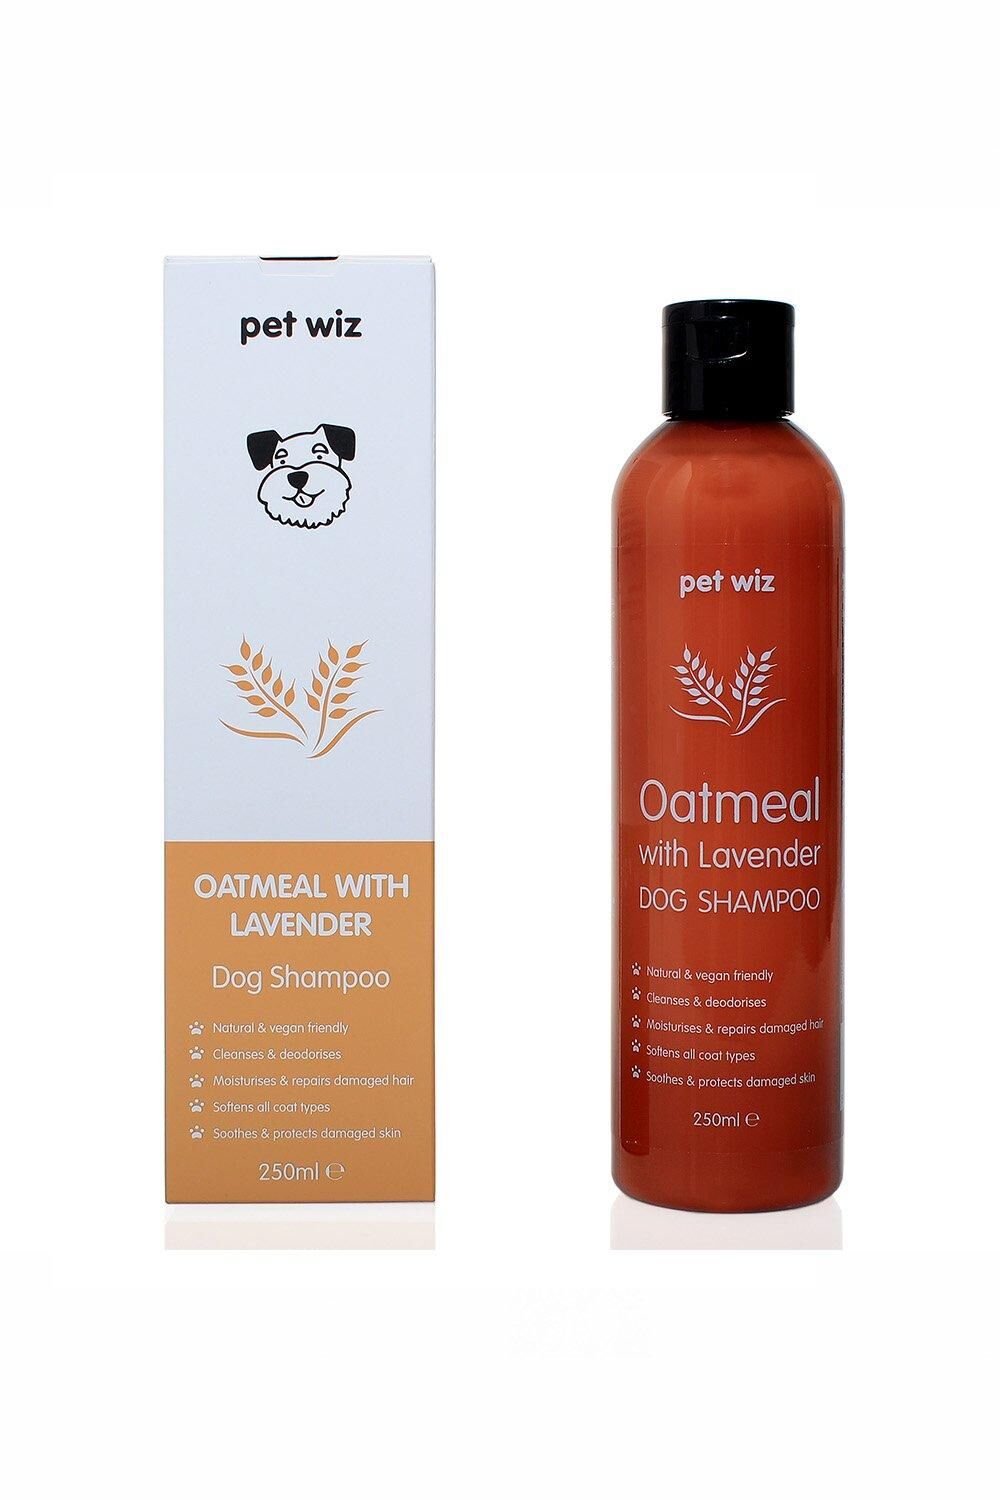 pet wiz Oatmeal with Lavender Dog Shampoo